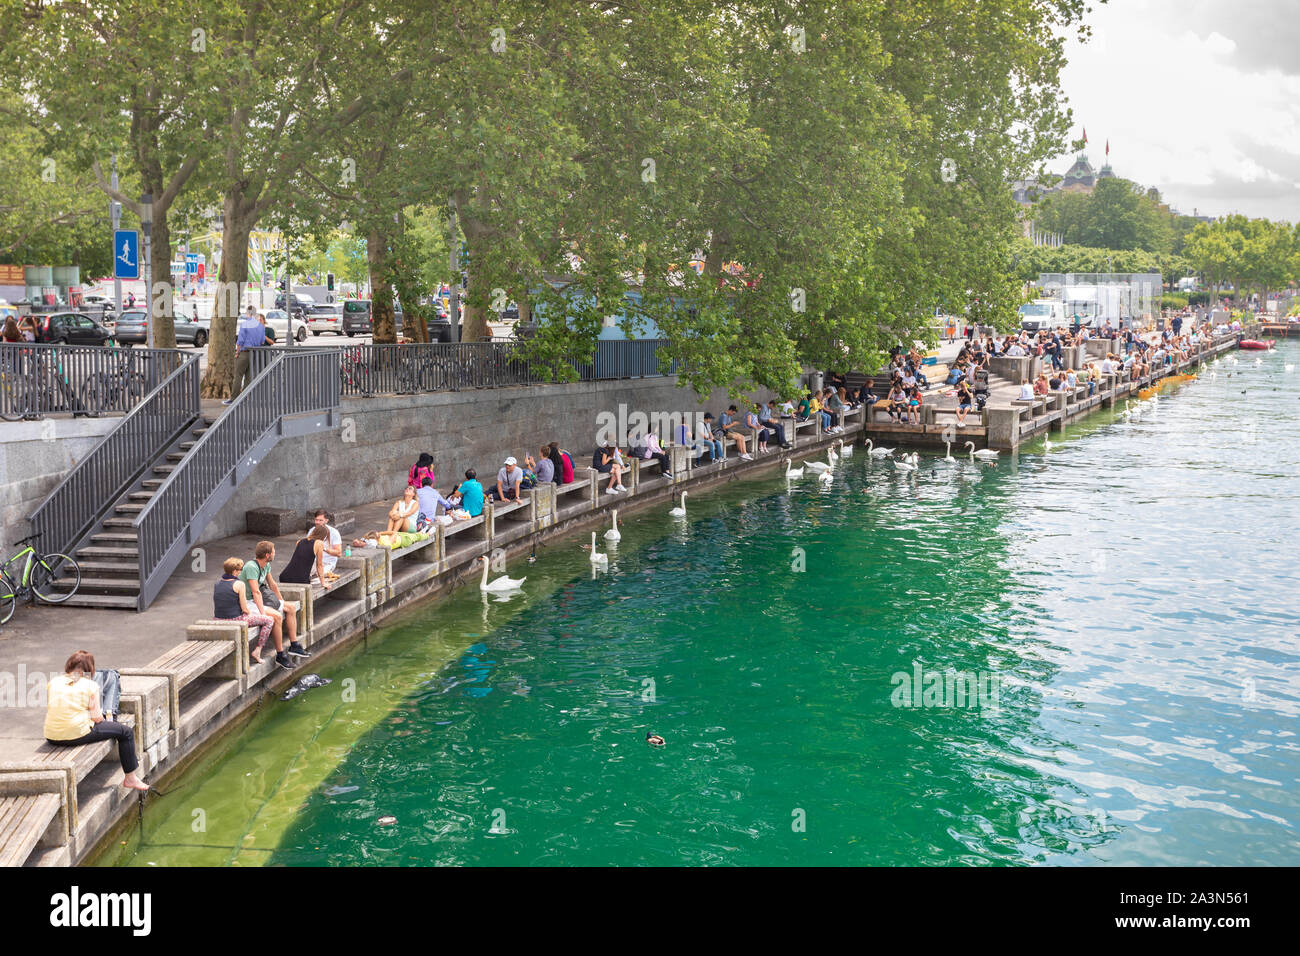 Les gens se détendant à Zürich Bellevue au lac de Zurich, Suisse. Cygnes et canards nageant sur l'eau. Banque D'Images